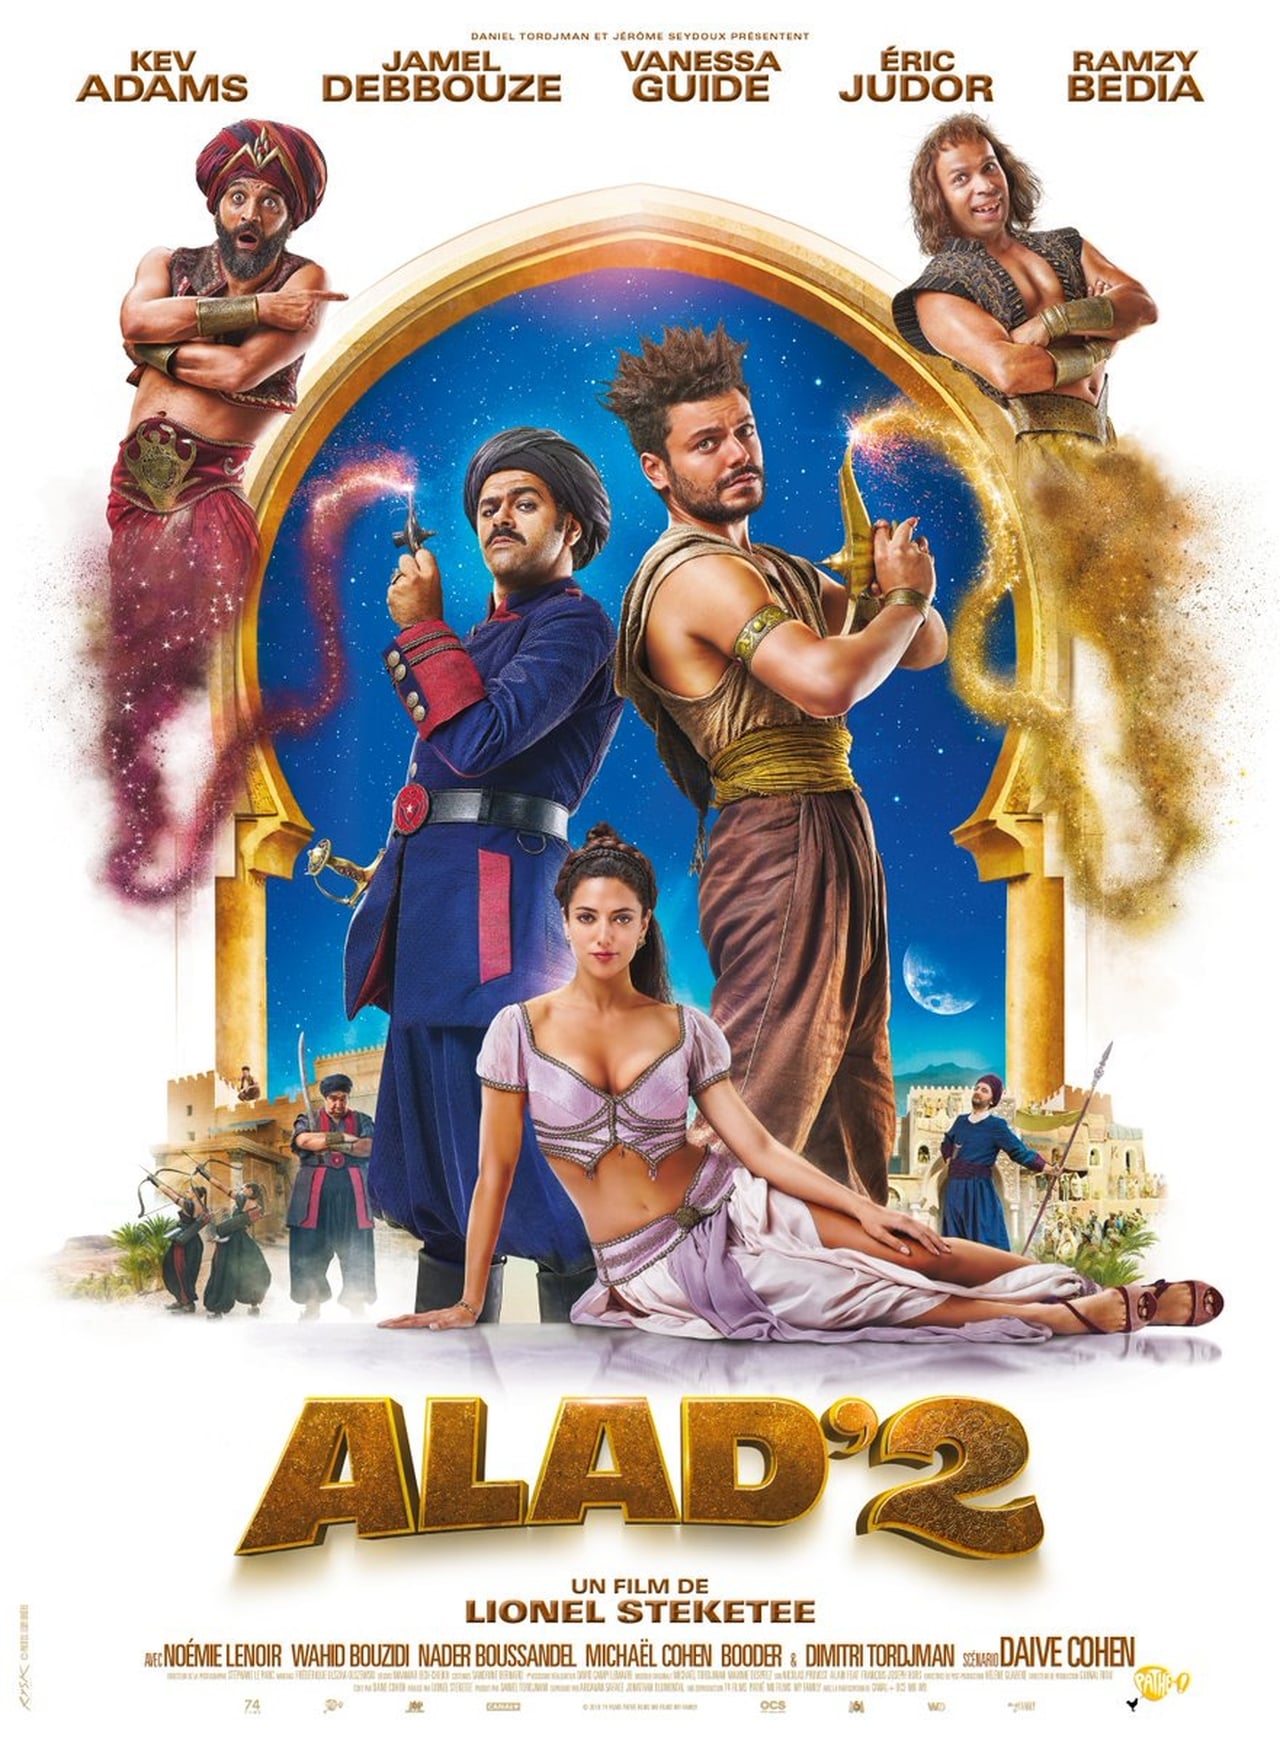 EN - Aladdin 2 (2018) ALADDIN COLLECTION